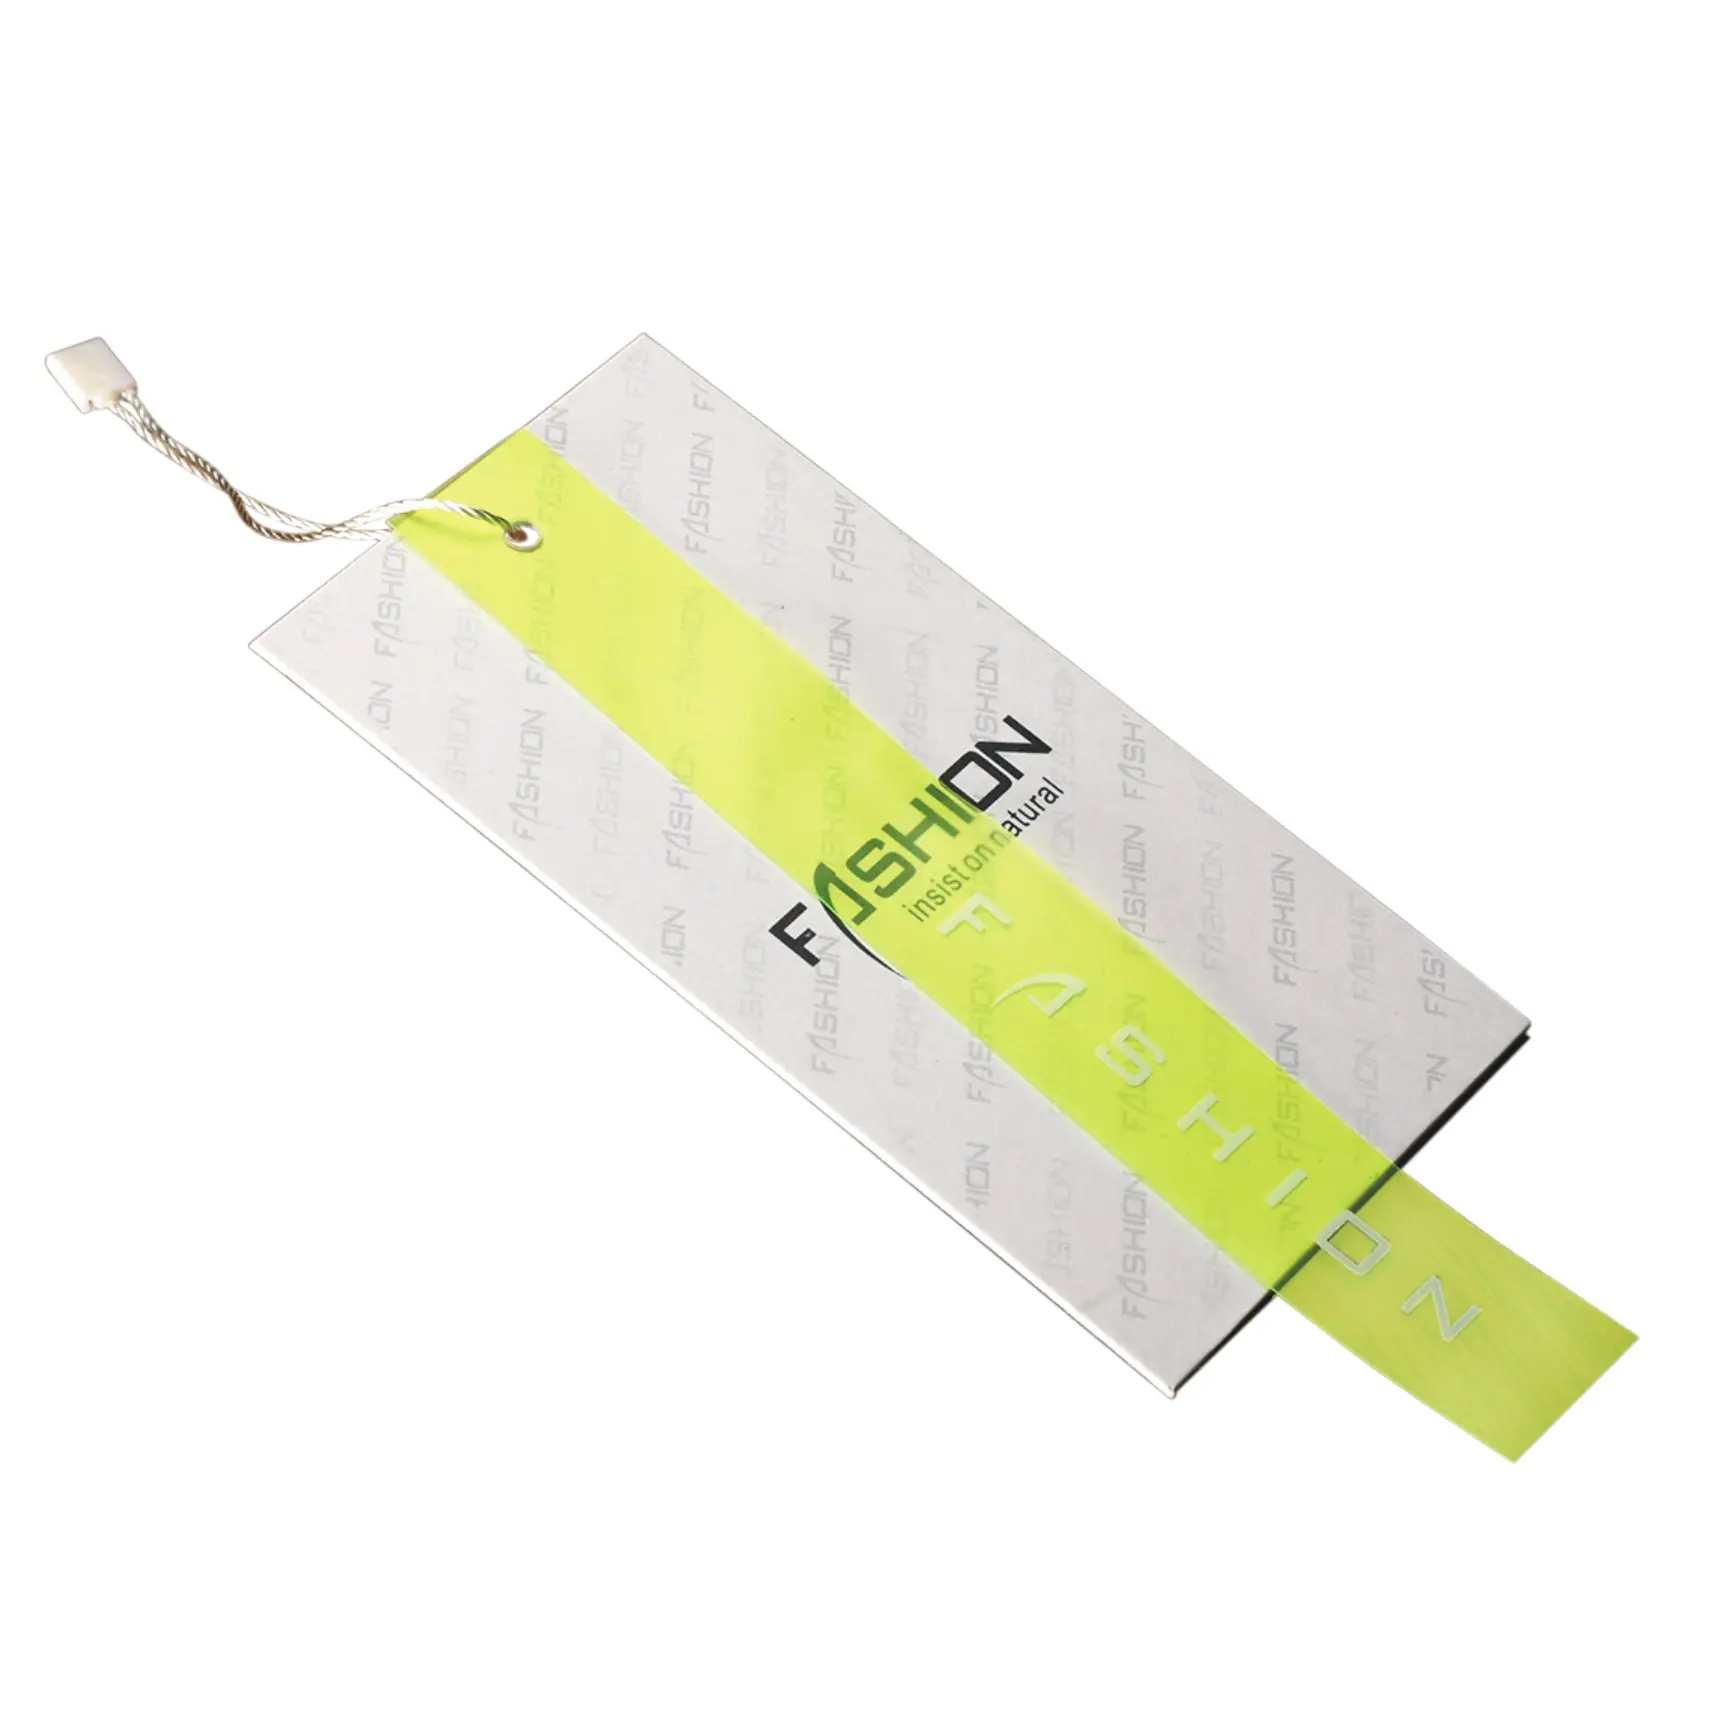 सबसे अच्छा बेच कागज लेबल मोटी कागज में किए गए स्टॉक परिधान कपड़े लटका टैग उभरा स्विंग लेबल सहायक उपकरण वस्त्र के लिए